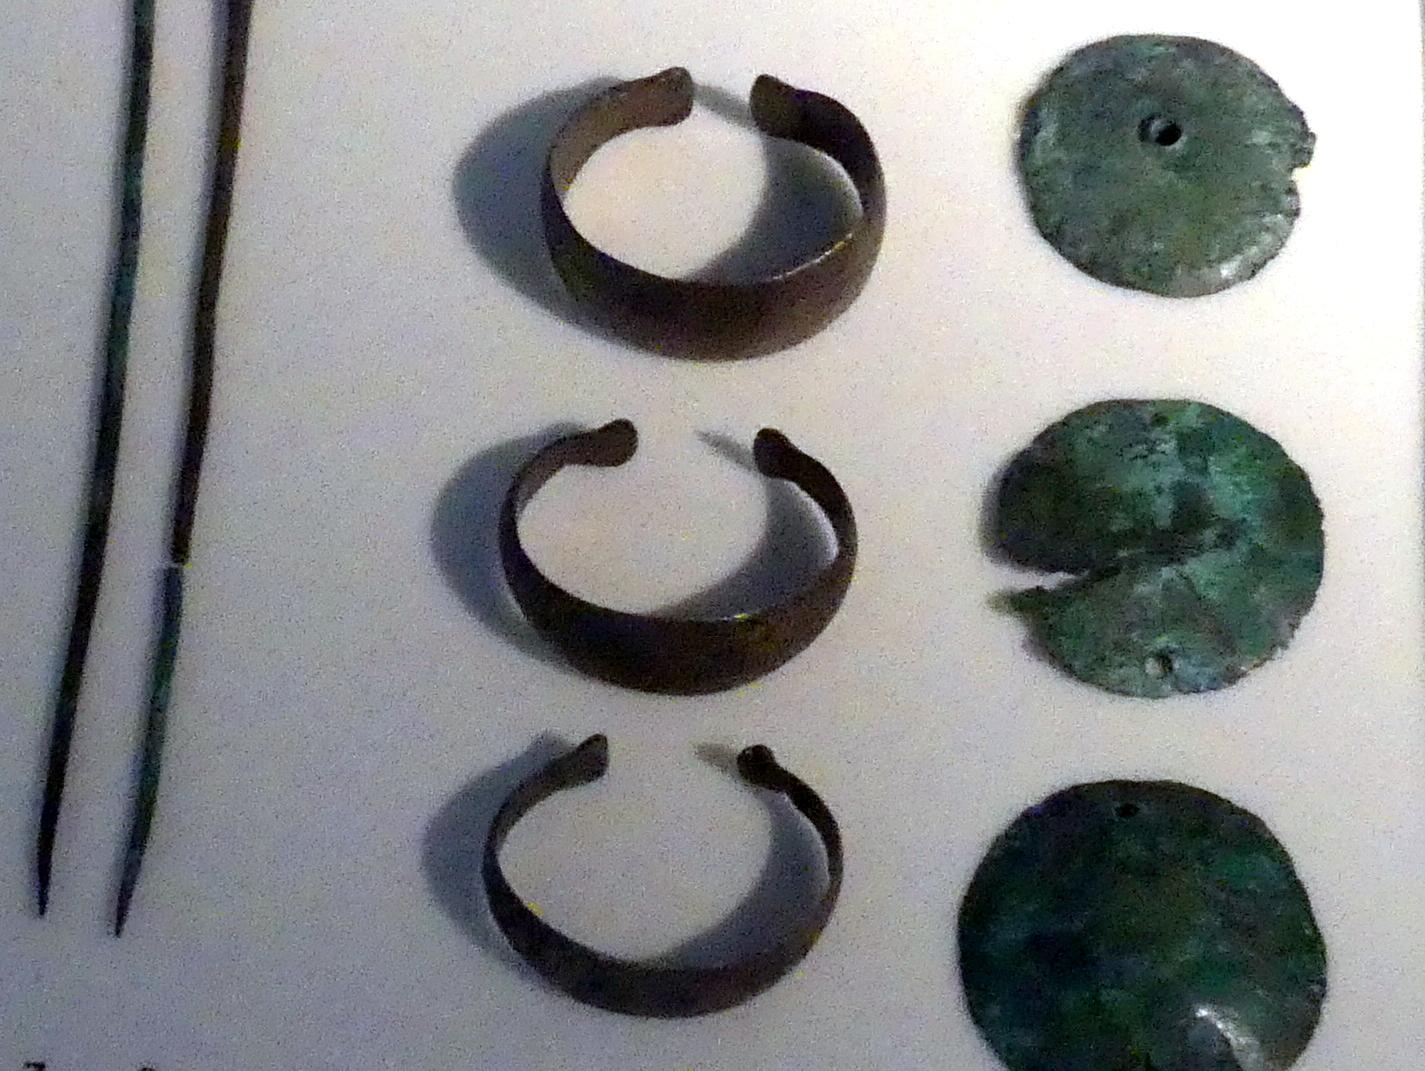 Stollenarmbänder, ziseliert, Mittlere Bronzezeit, 3000 - 1300 v. Chr., 1600 - 1300 v. Chr.